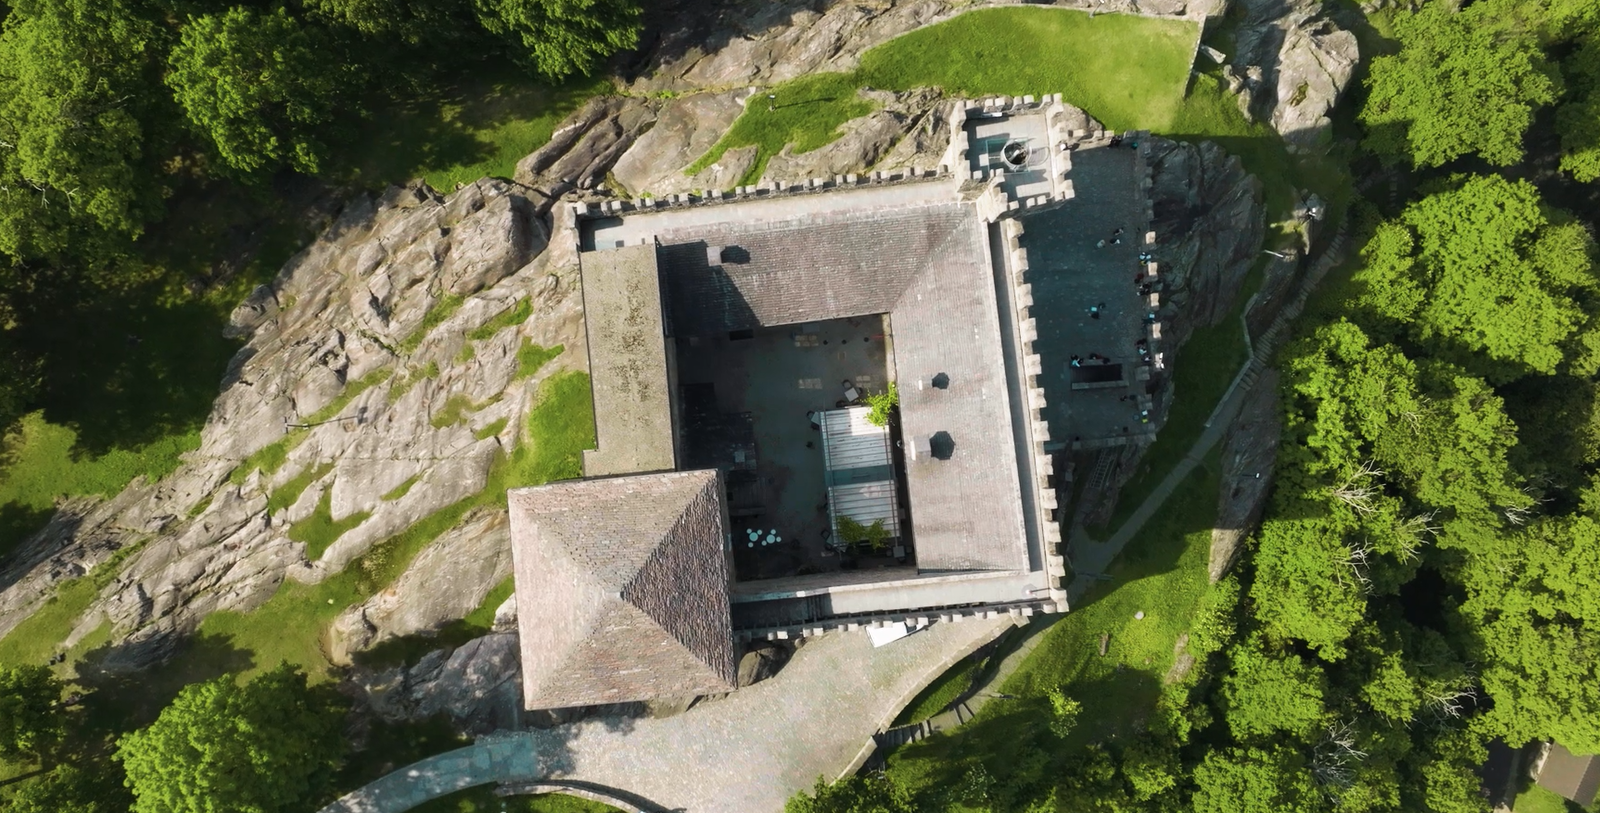 Festung von Bellinzona